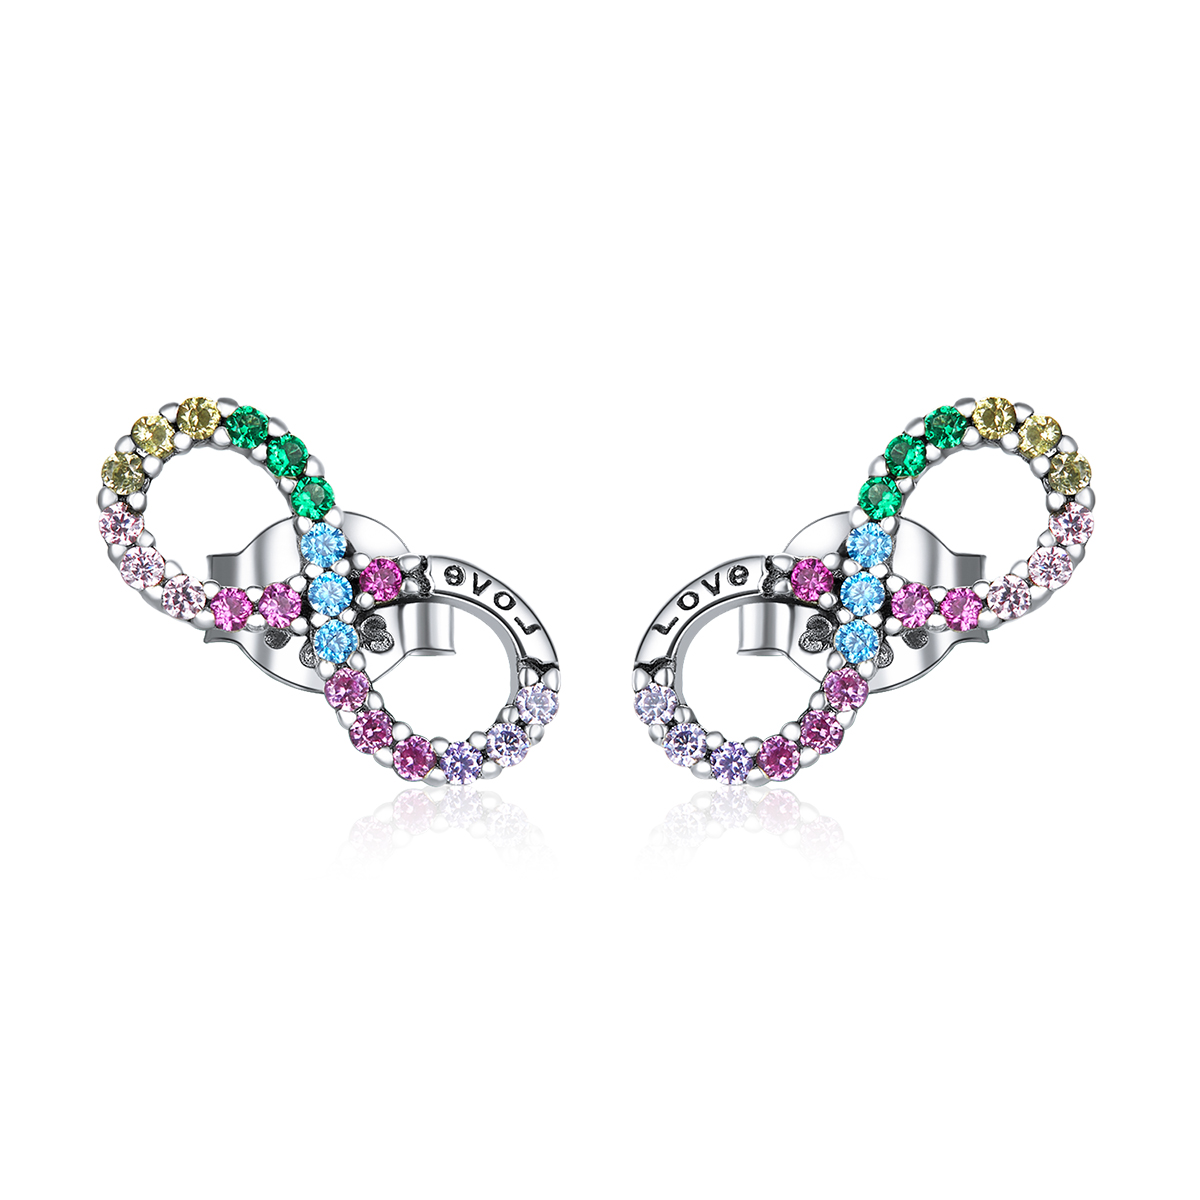 E-shop Linda's Jewelry Strieborné napichovacie náušnice Infinite Rainbow Ag 925/1000 IN147